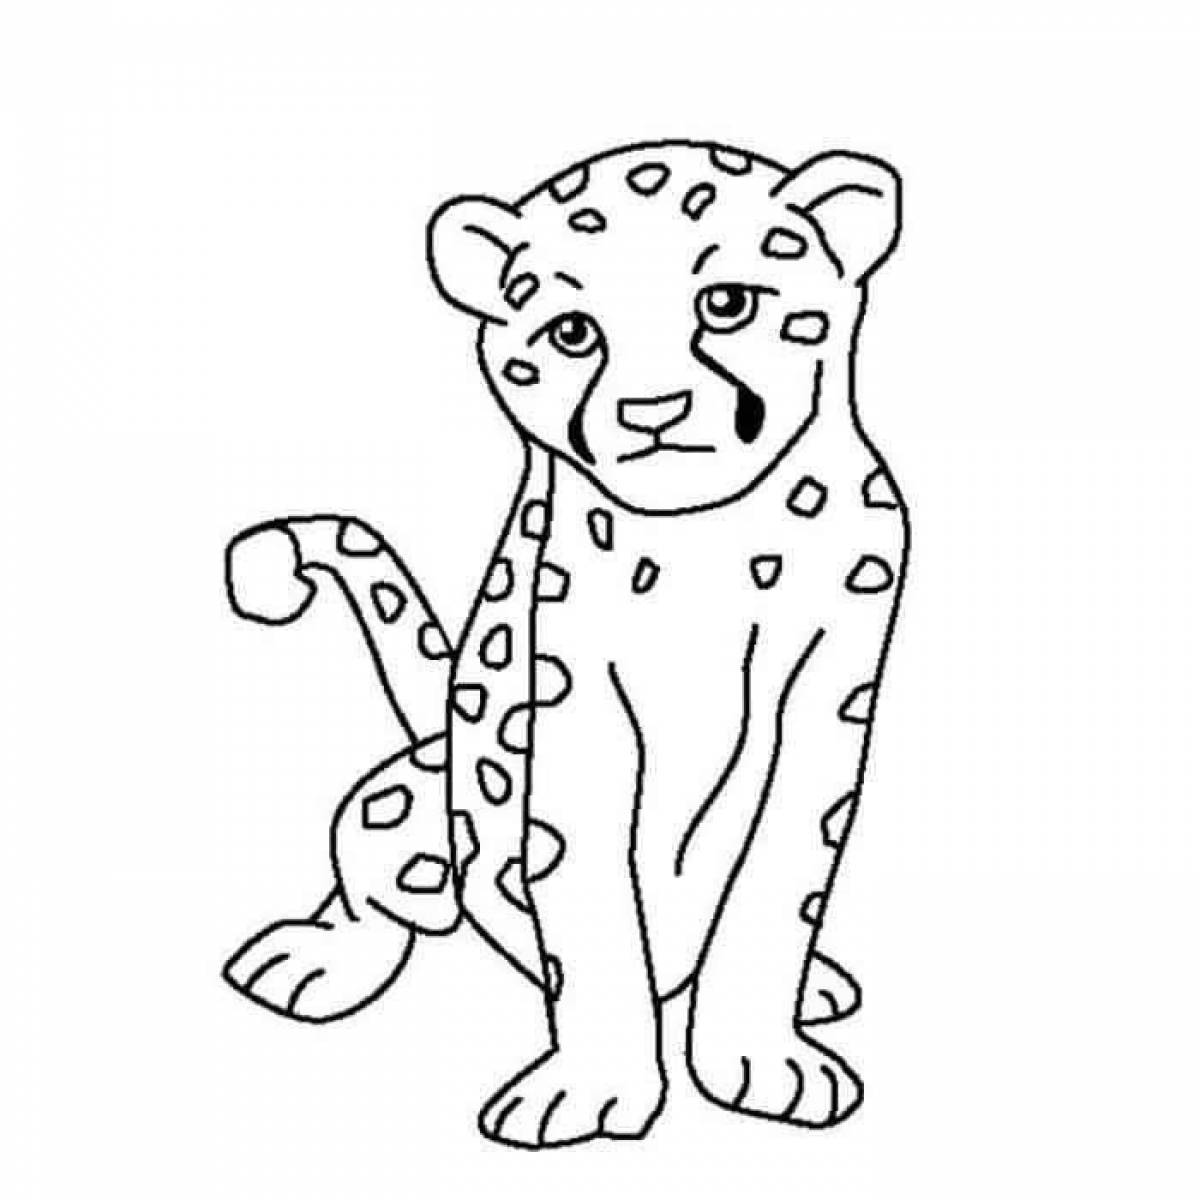 Coloring book fat cheetah for kids